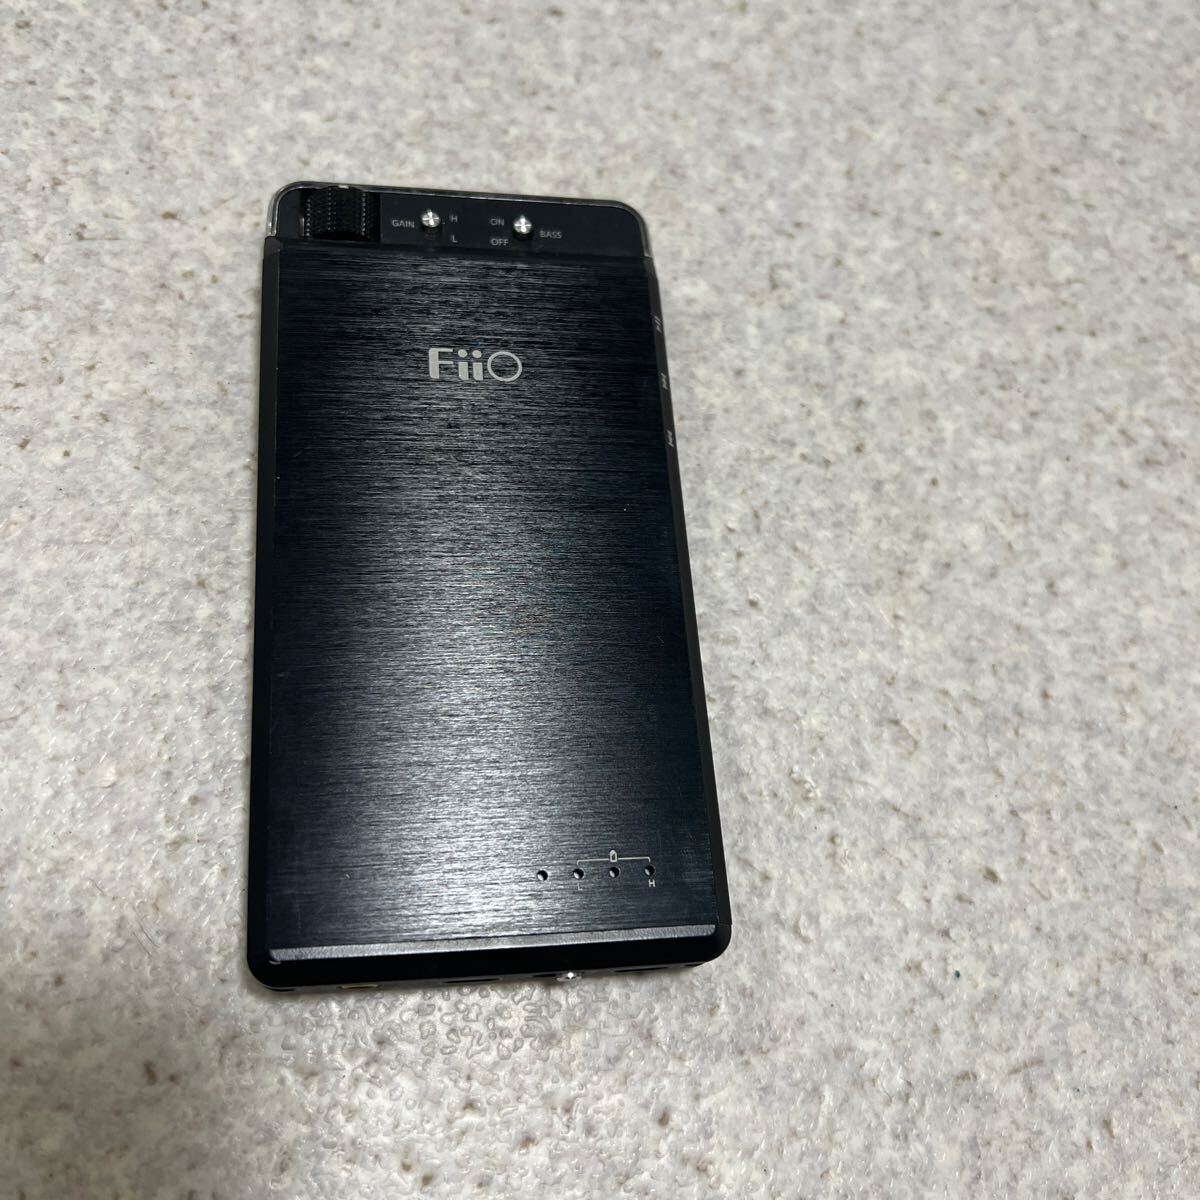 FiiO KUNLUN USB DAC HEADPHONE AMP MODEL:E18